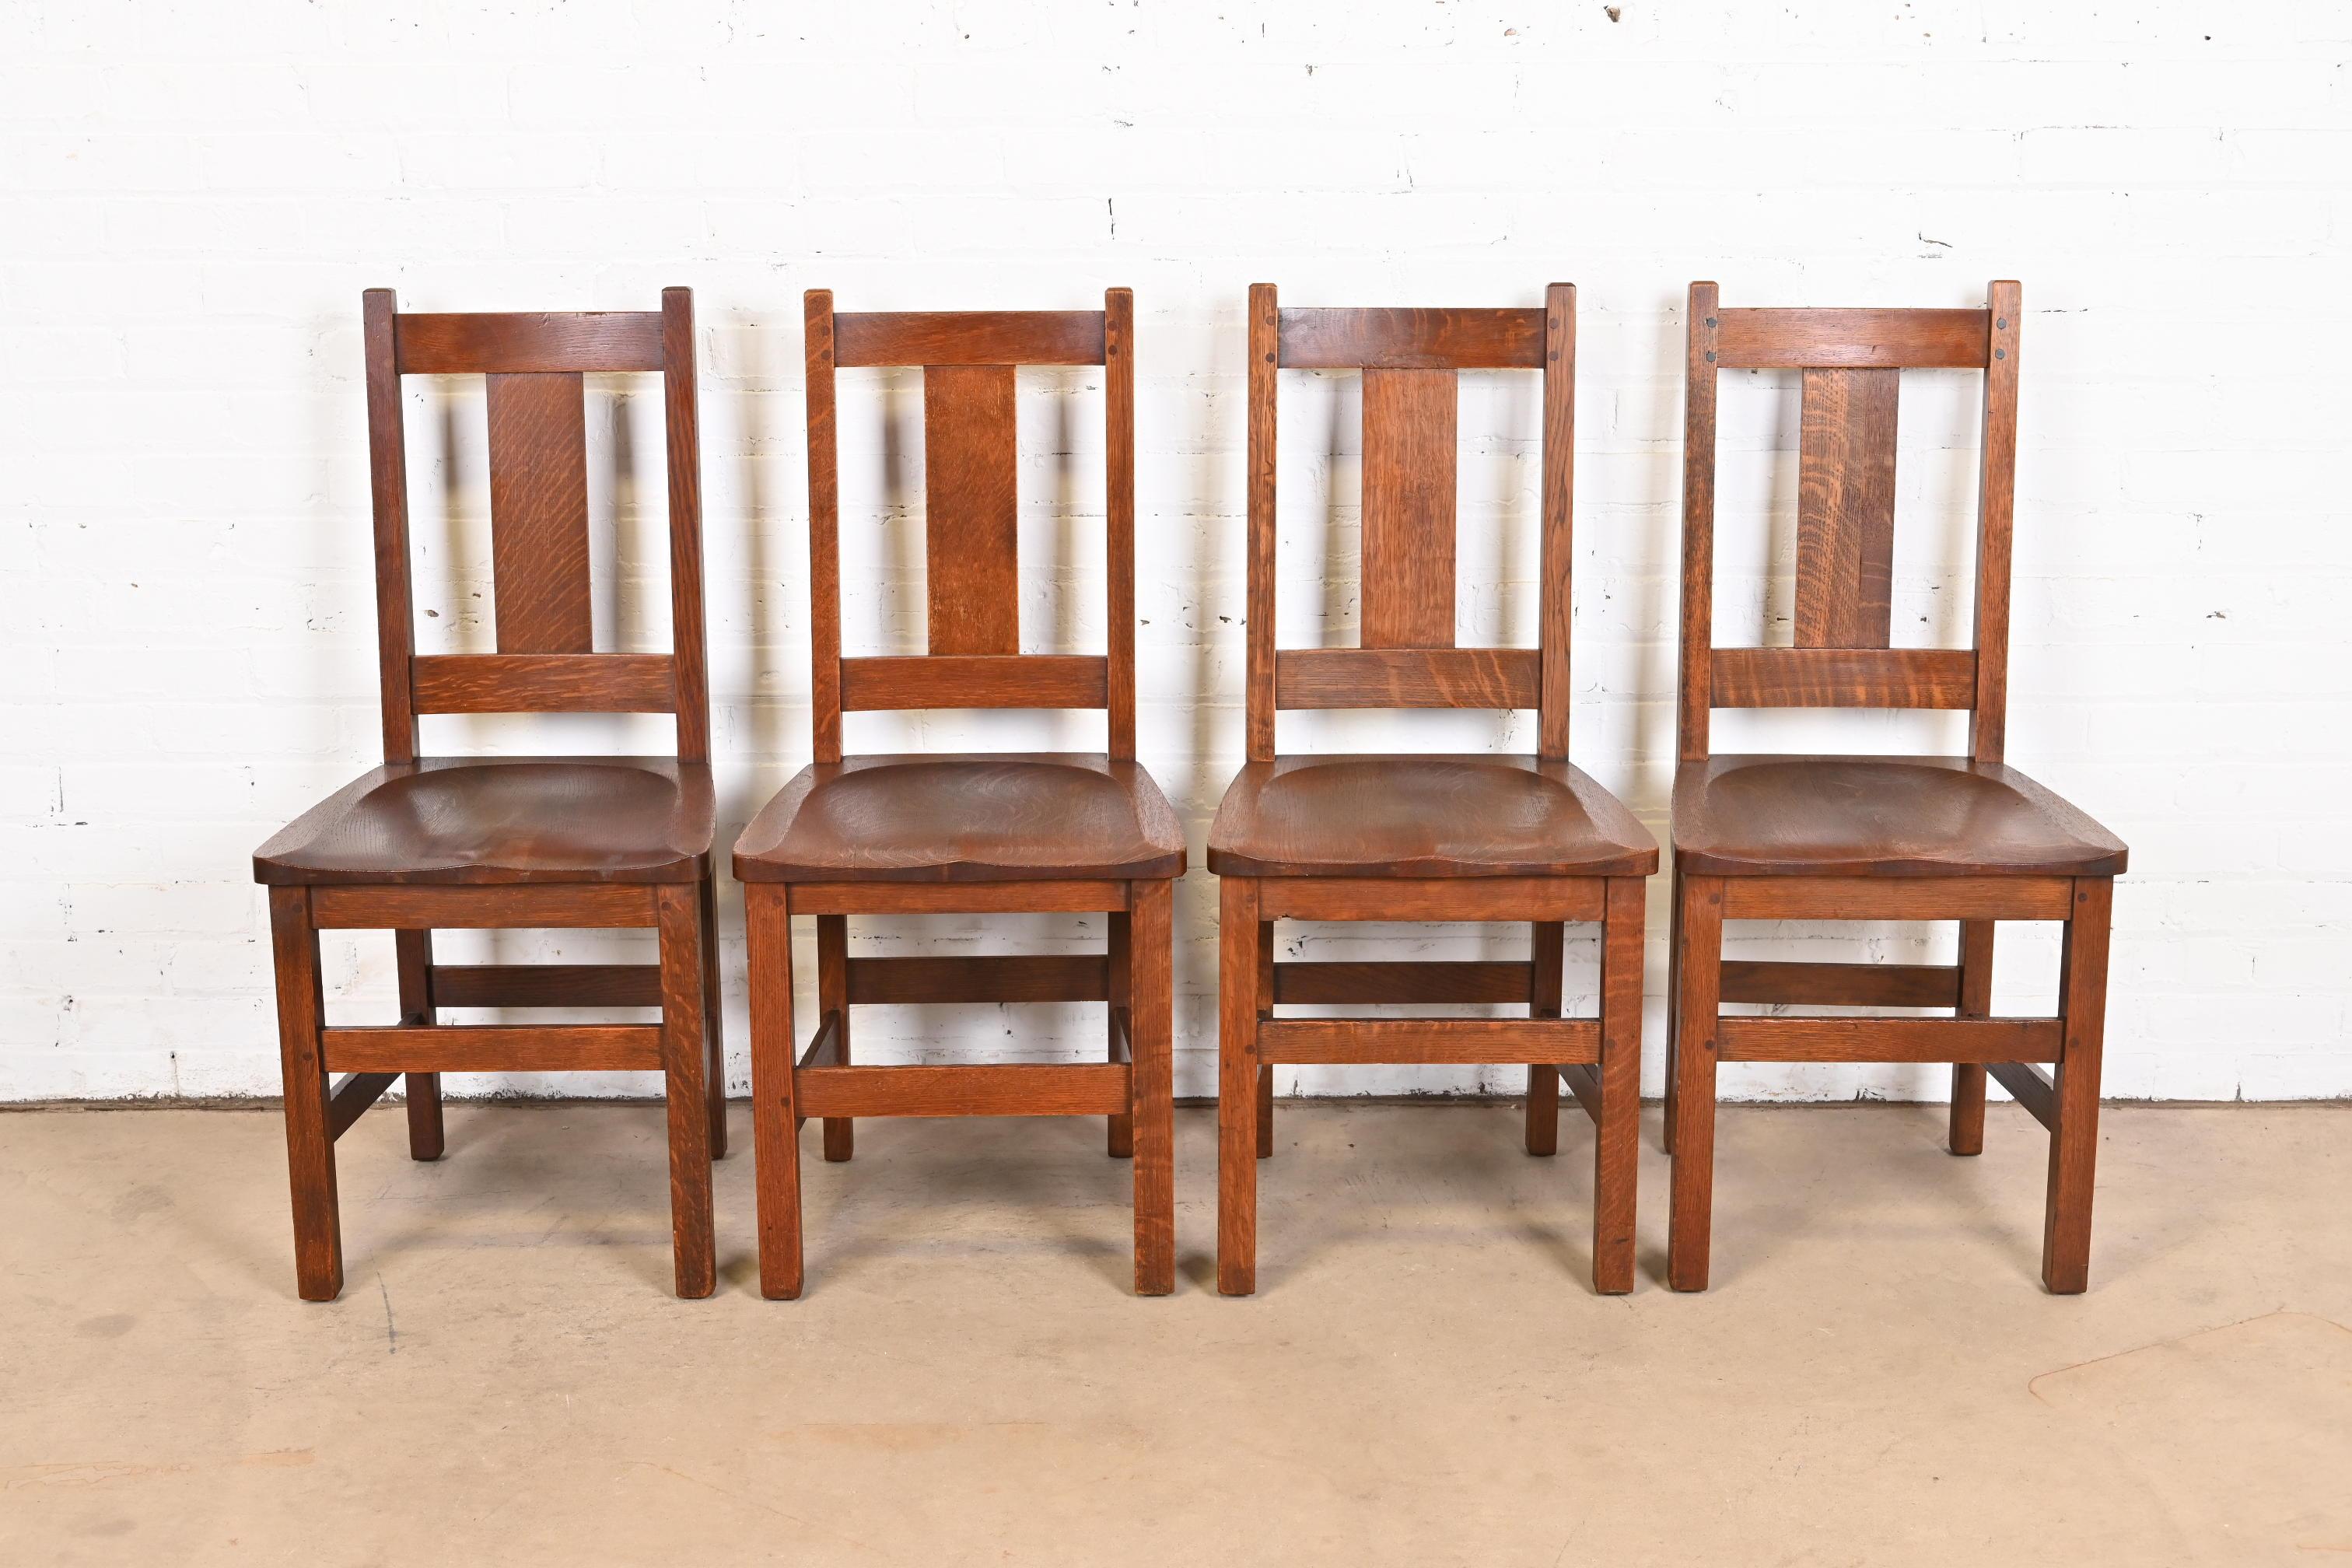 Un magnifique ensemble de quatre chaises de salle à manger anciennes en chêne massif scié en quartier, de style Mission ou Arts & Crafts.

Par Limbert

USA, Circa 1900

Dimensions : 17,25 